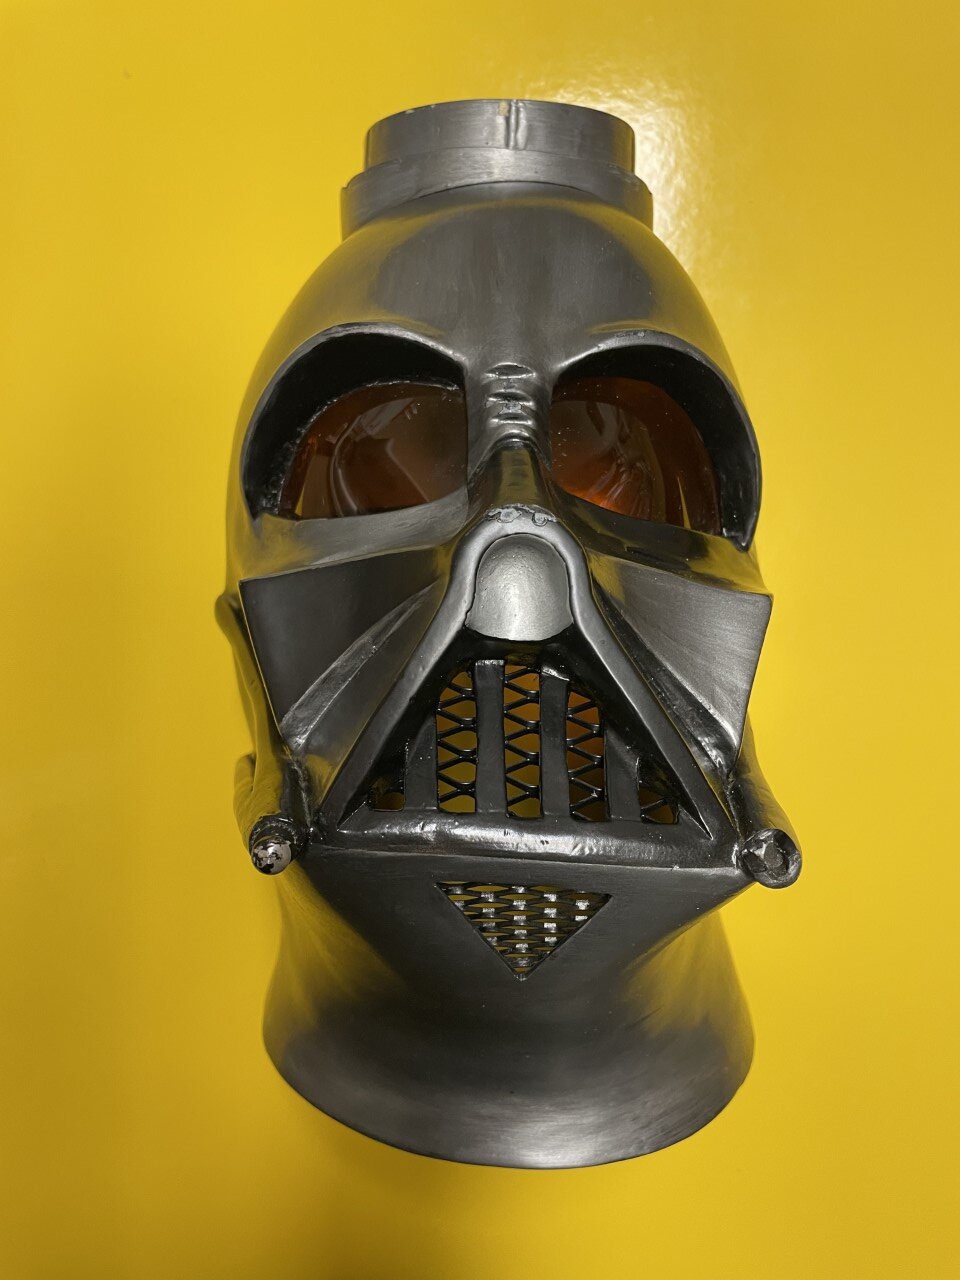 Darth Vader helmet damage 5.jpg